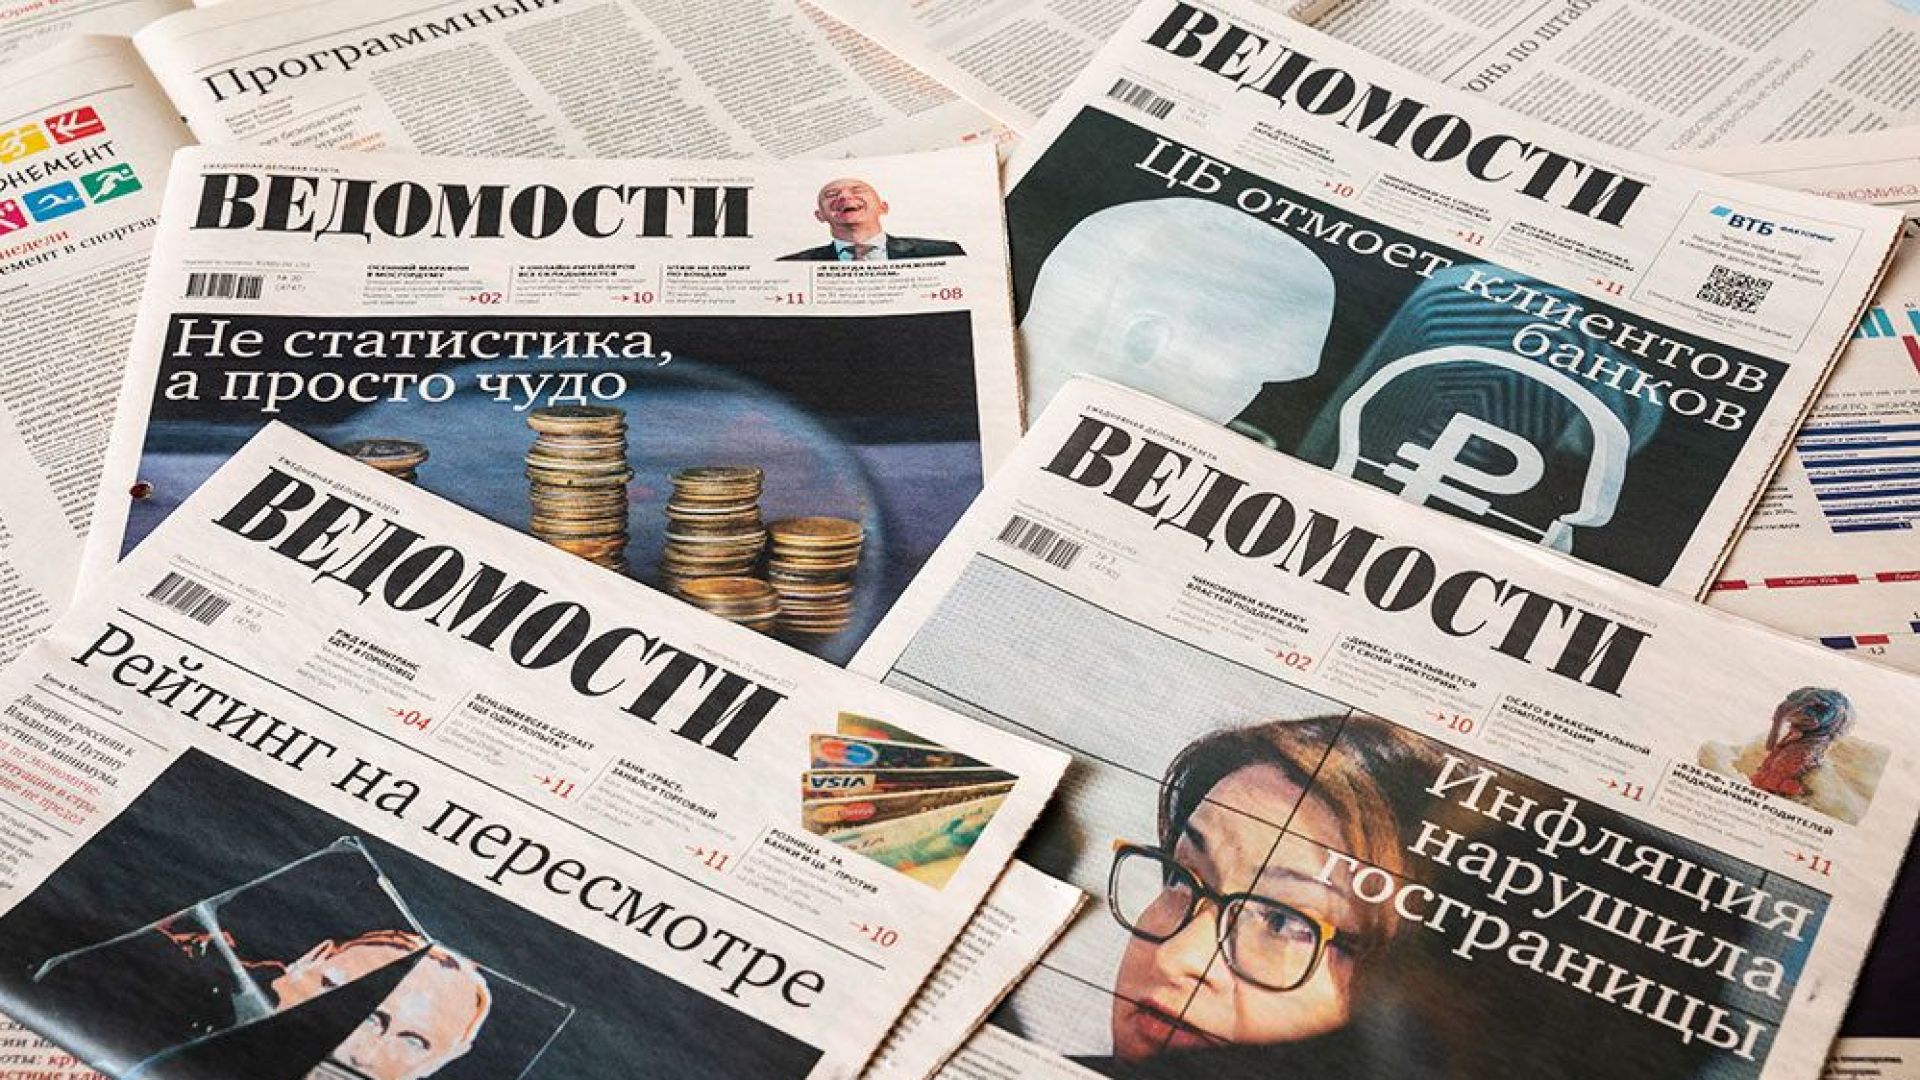 Петима заместник главни редактори на водещия руски икономически всекидневник Ведомости